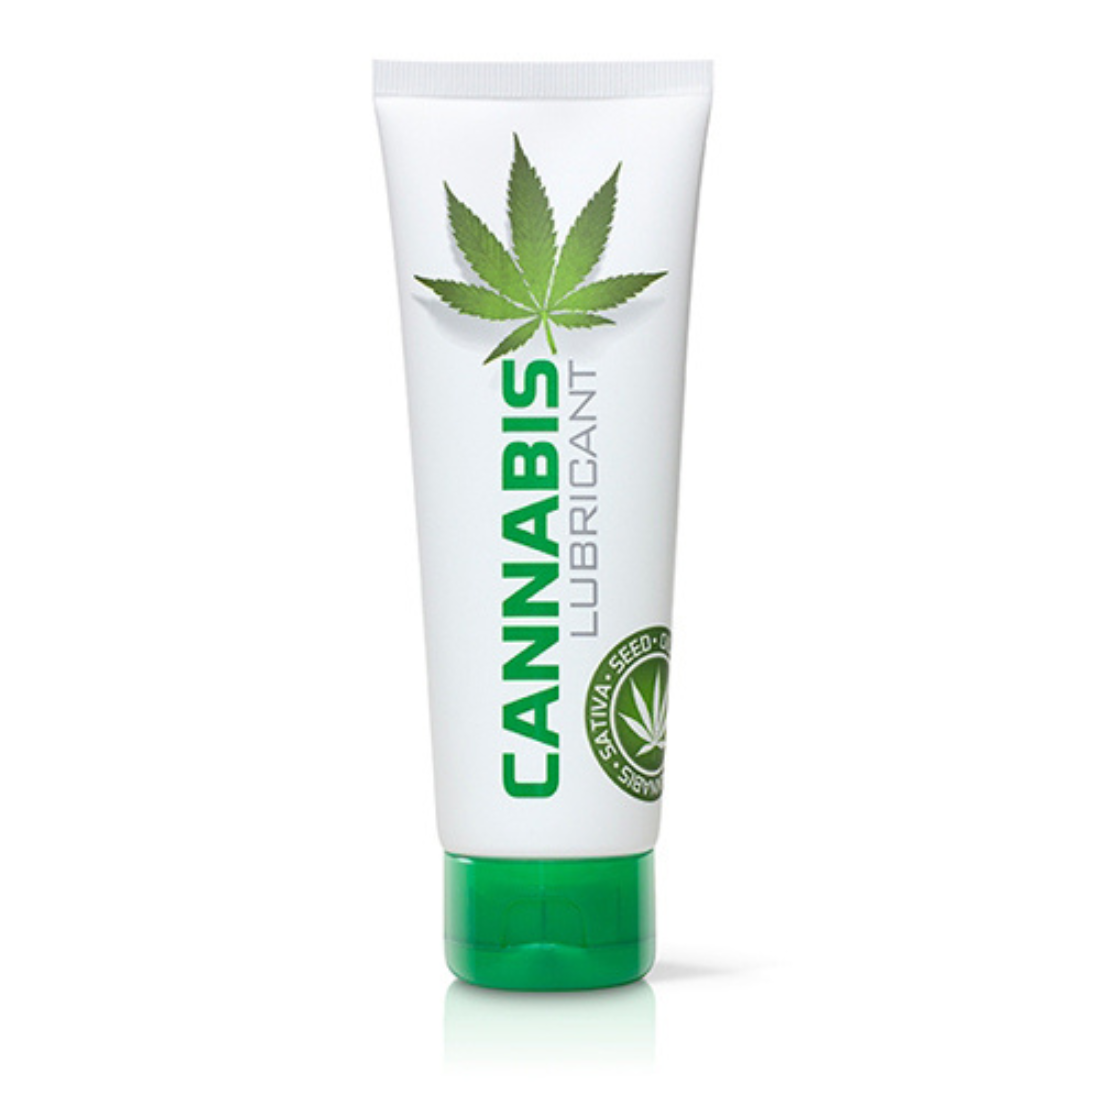 Tube met 125 ml Cannabis Glijmiddel van Cobeco Pharma, te koop bij Flavourez.